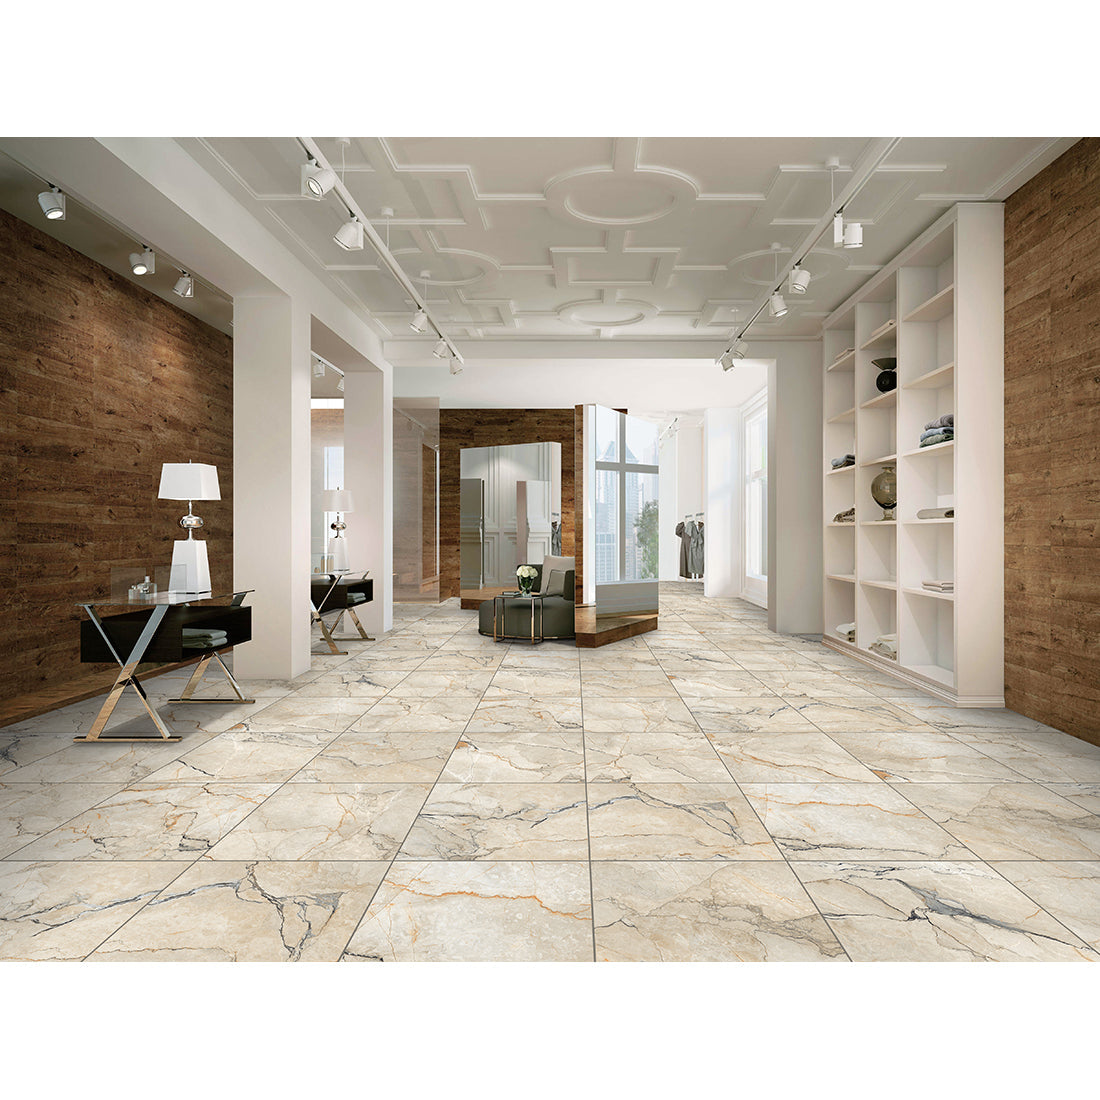 Sylvan Beige Marble Essence 60x60cm Polished Porcelain Wall & Floor Tile